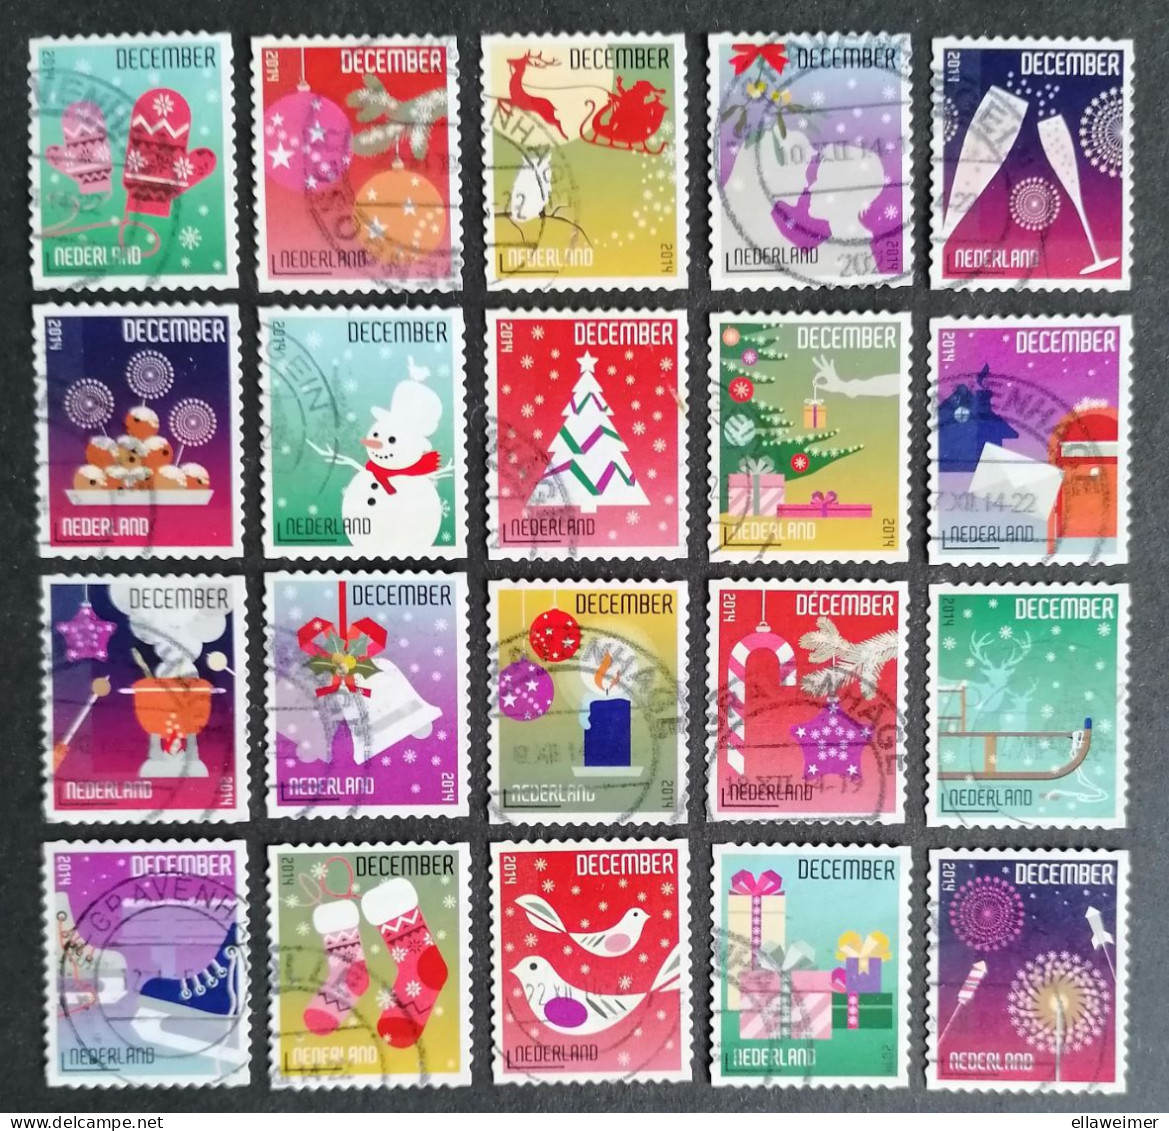 Nederland/Netherlands - Nrs. 3236 T/m 3255 - Serie Kerstzegels 2014 (gestempeld/used) - Gebraucht